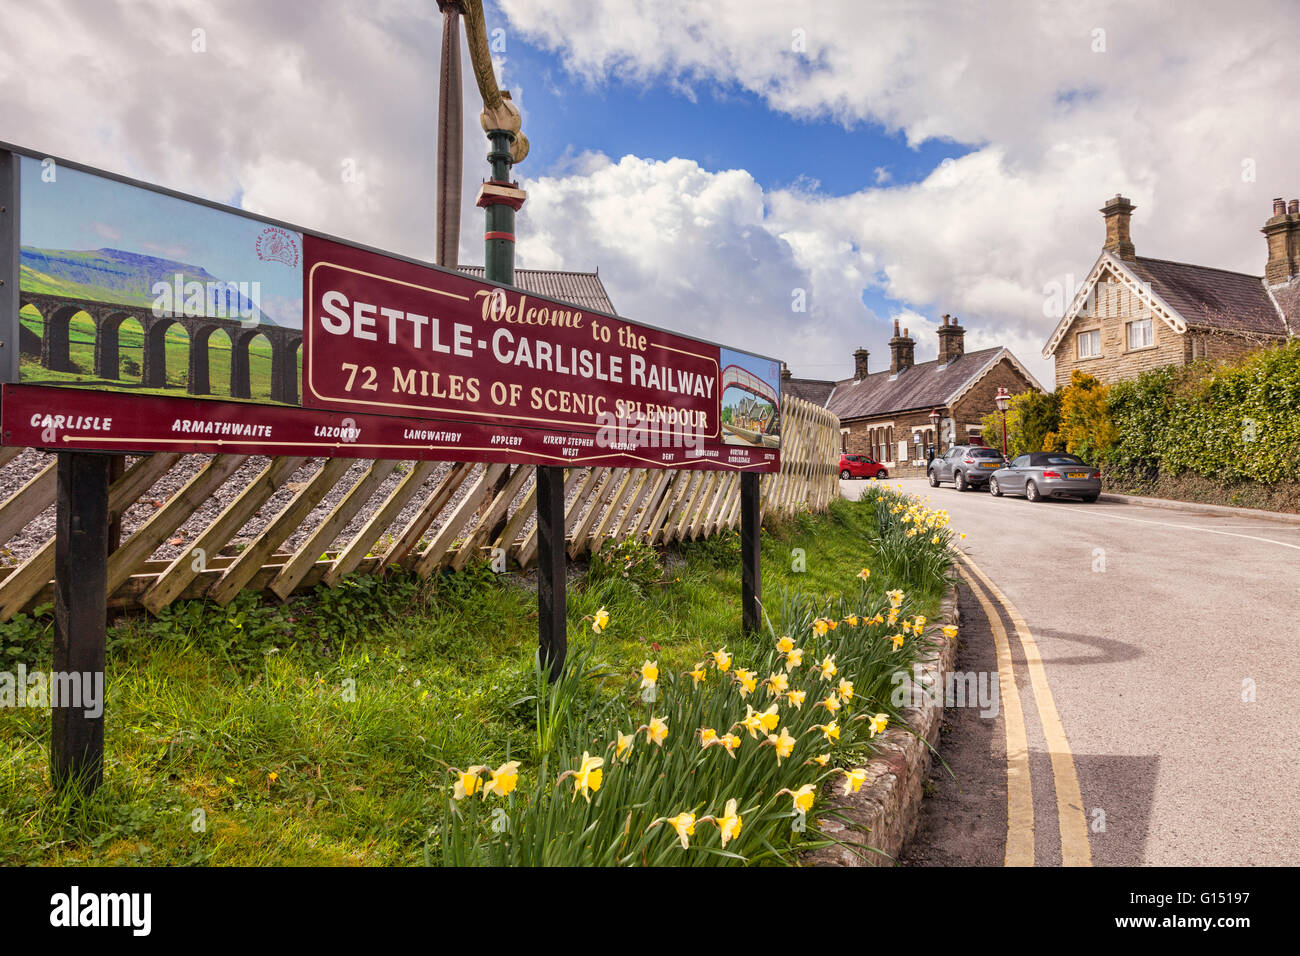 Settle Railway Station, North Yorkshire, England, UK Stock Photo